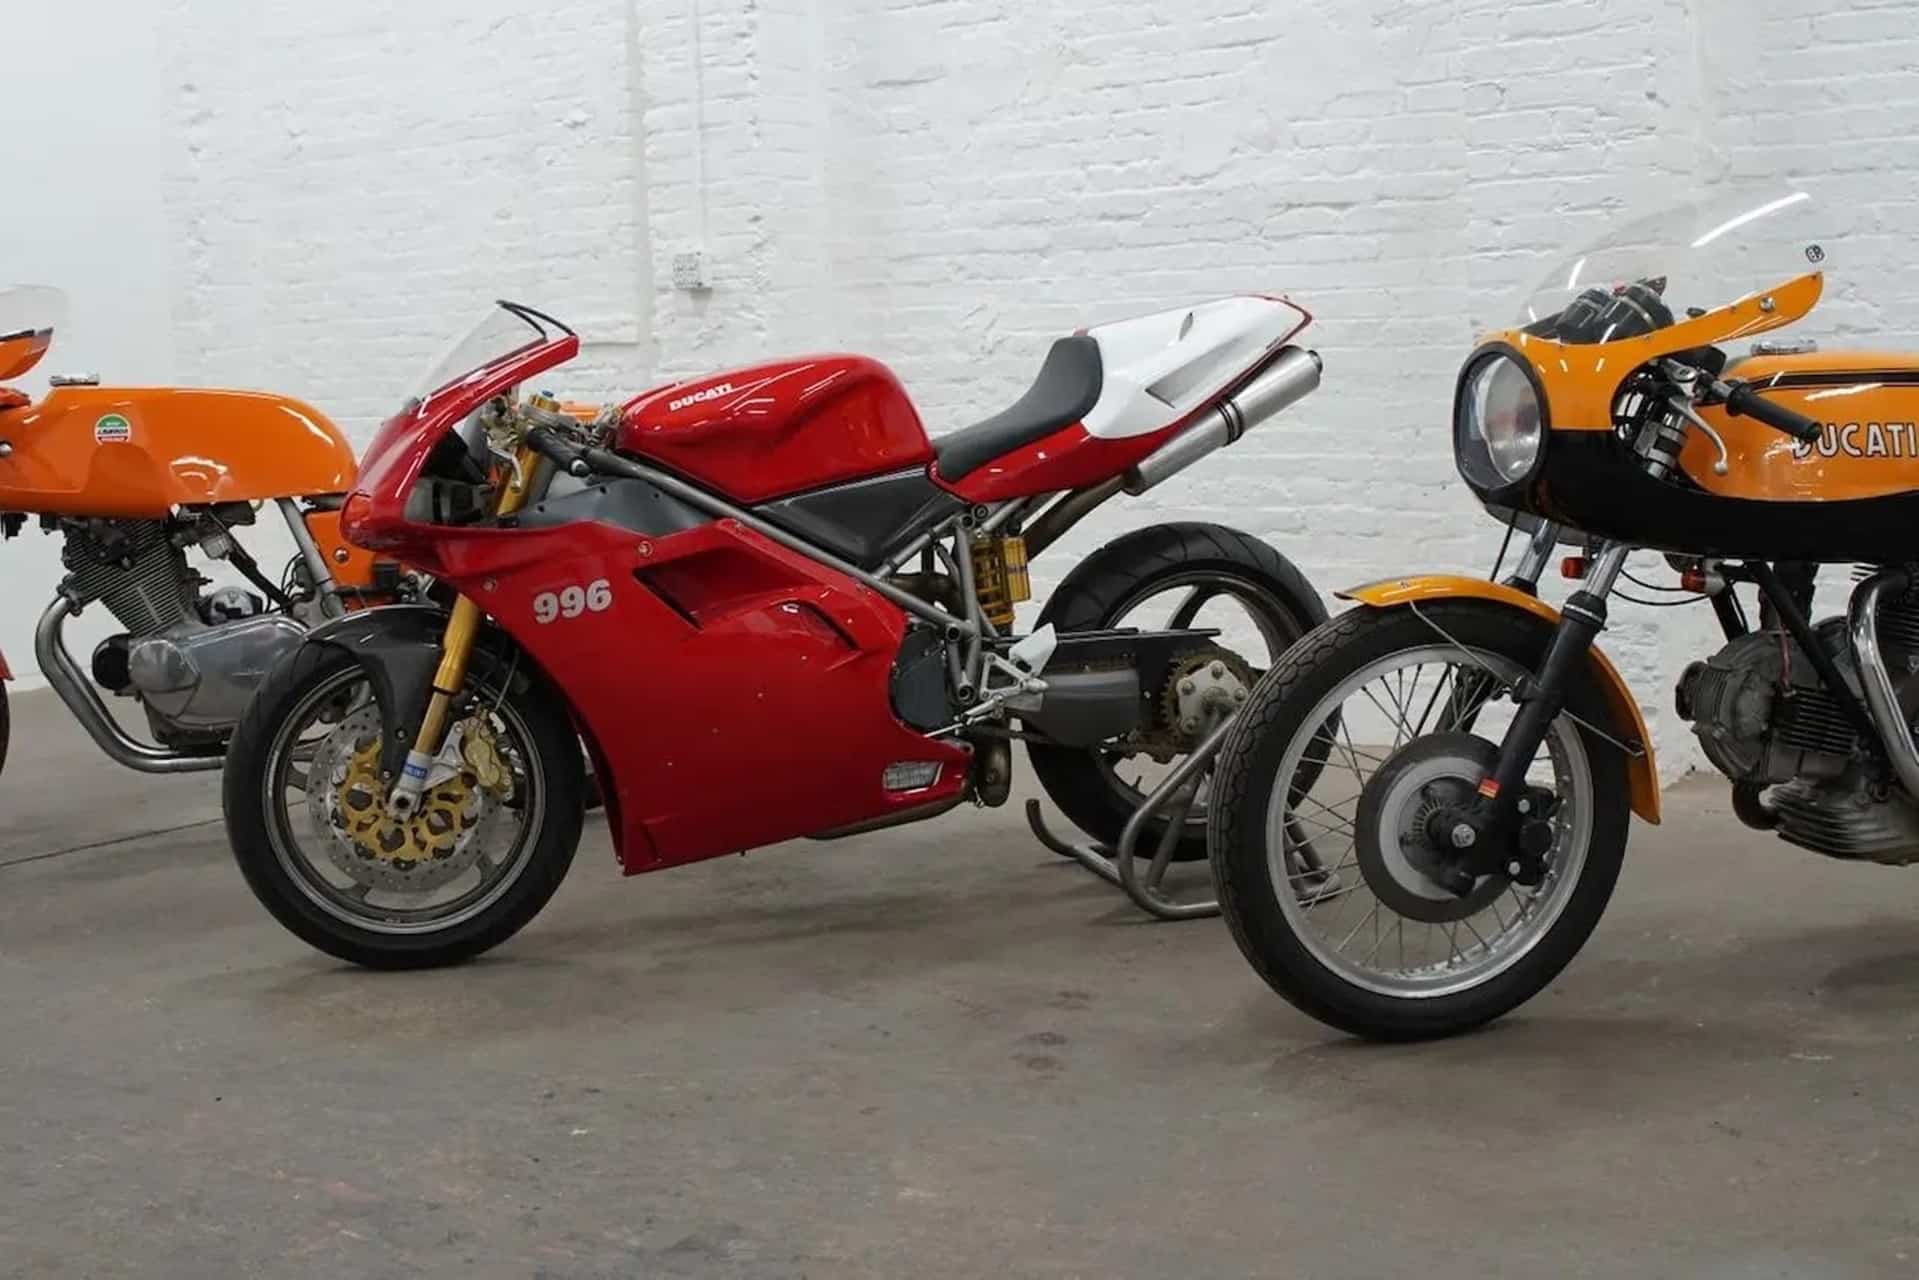 Motos de ensueño a la venta: Ducati 996 SPS #1653 N.O.S